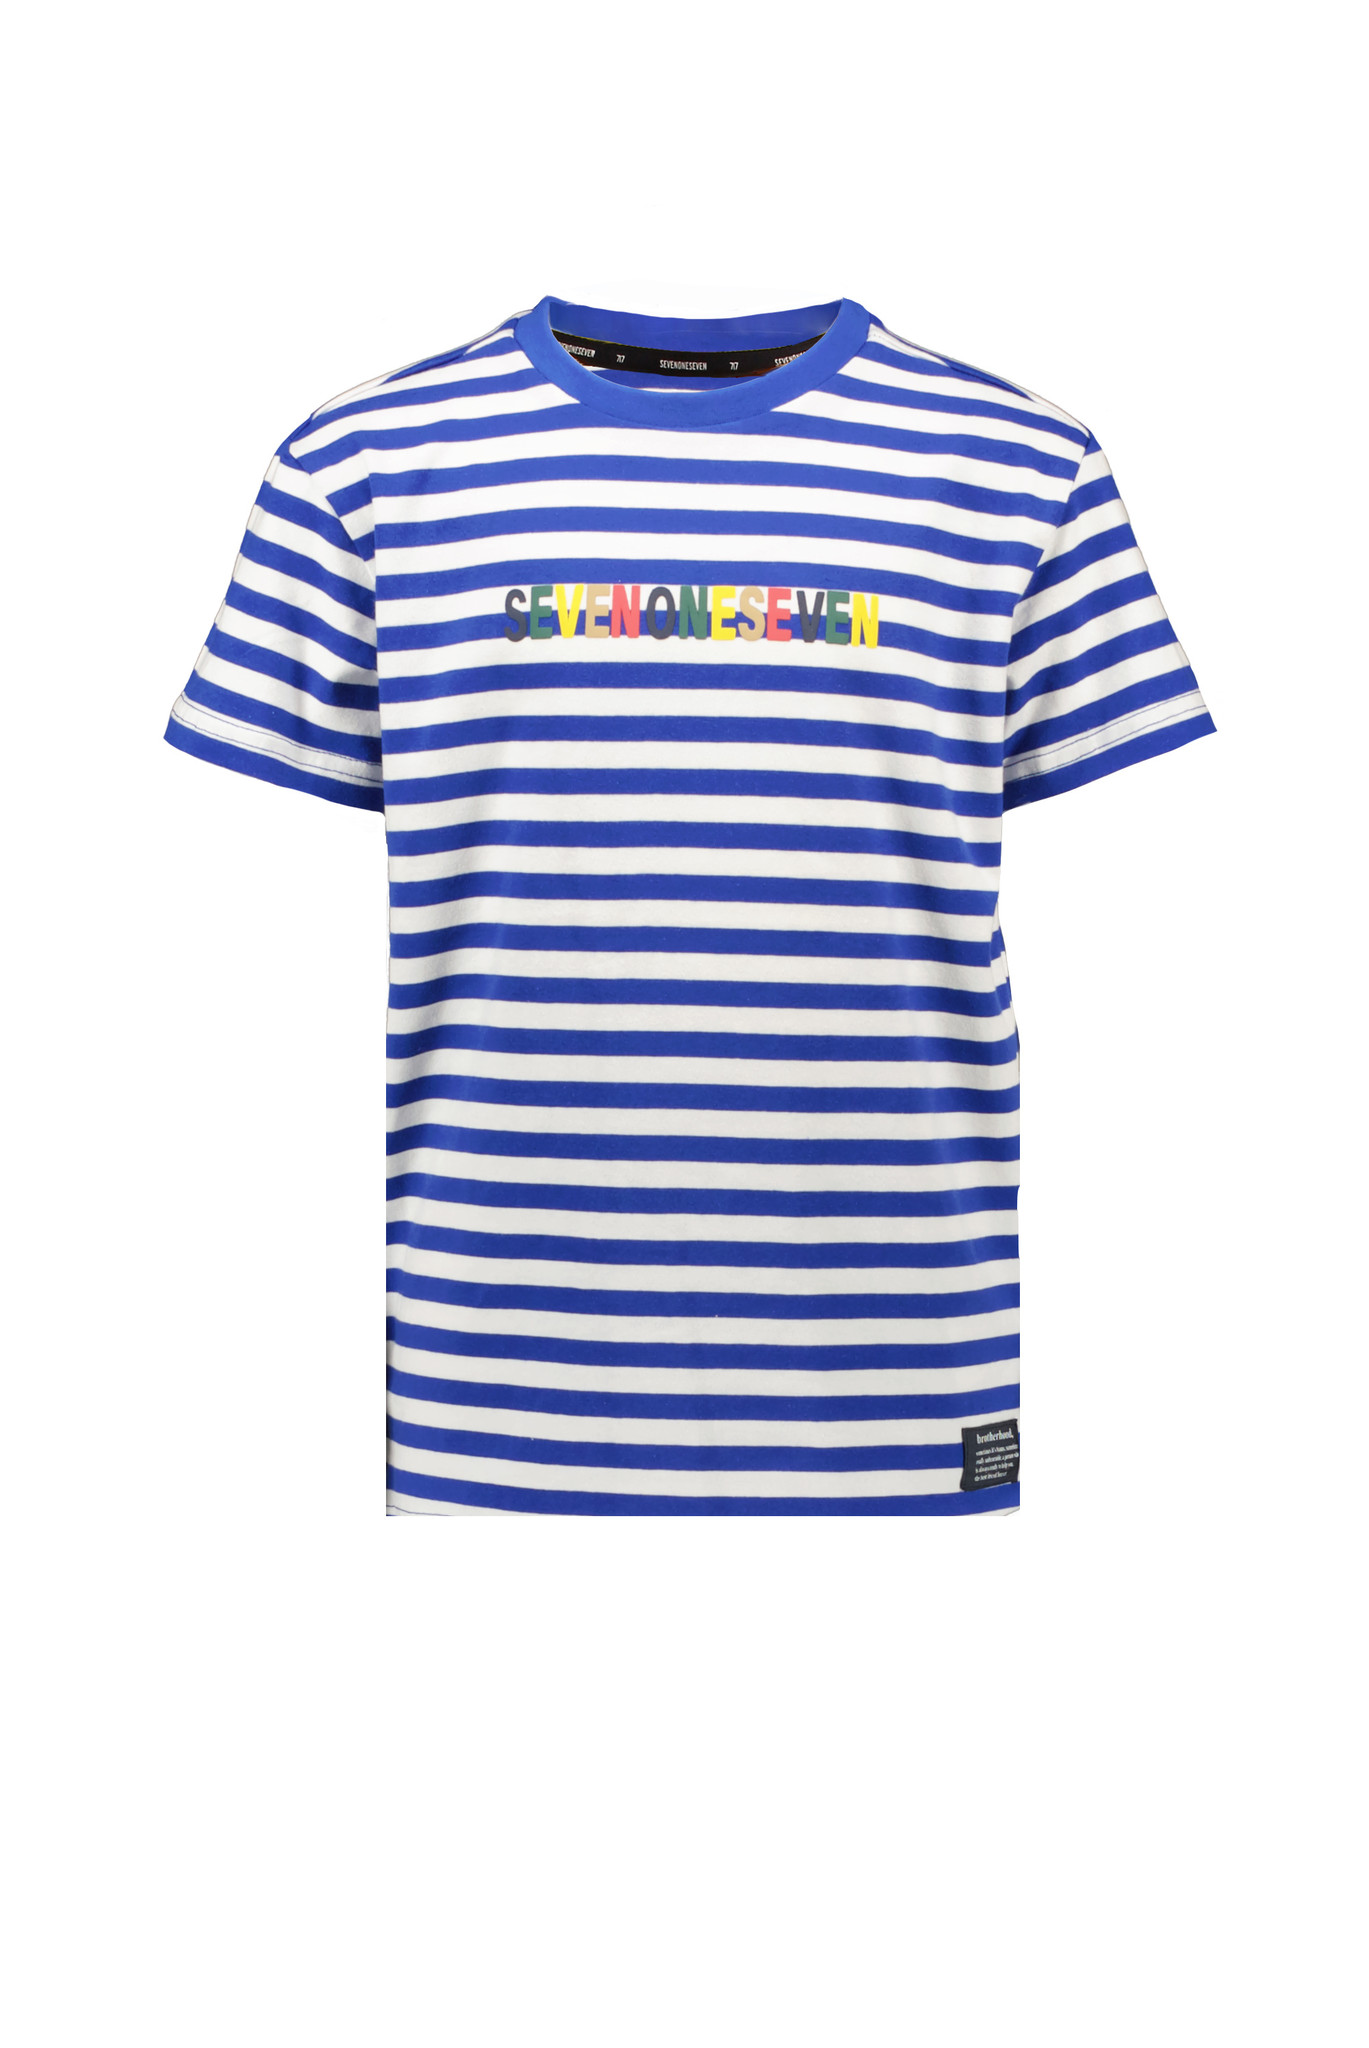 Seven one Seven Seven One Seven | T-shirt Stripes - Snorkle Blue